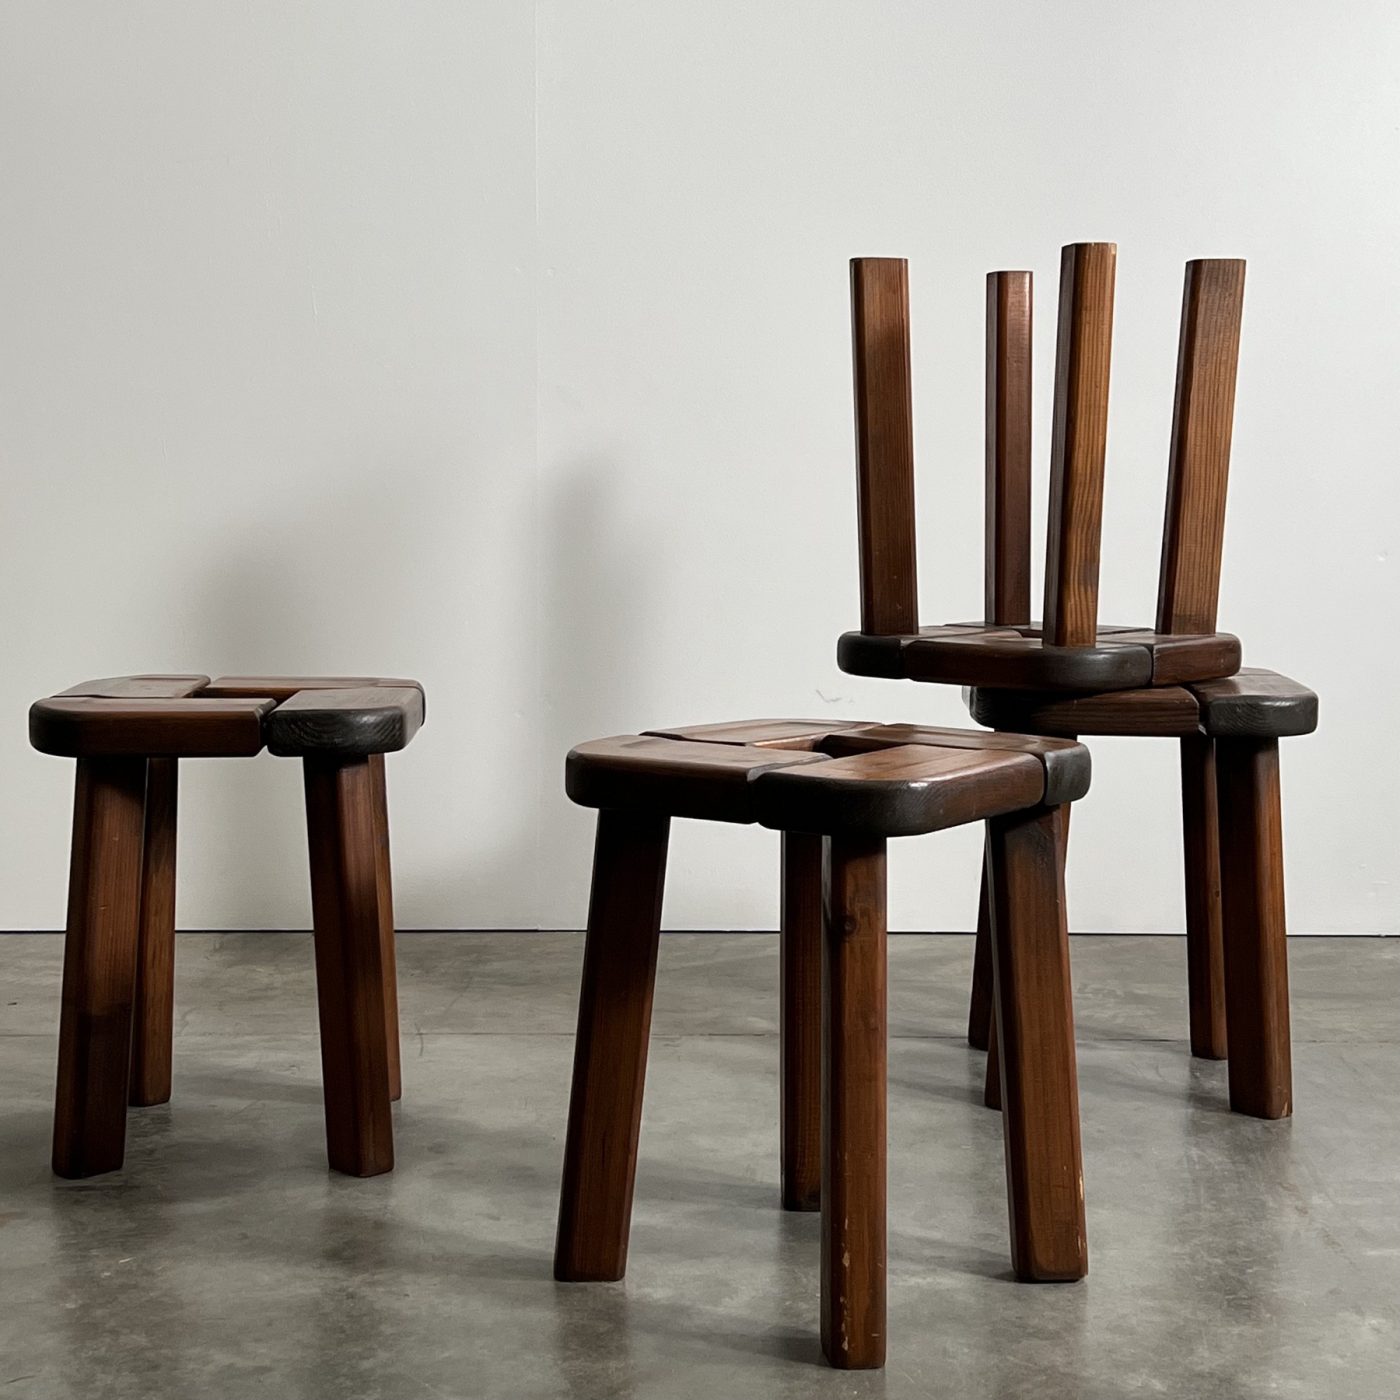 objet-vagabond-vintage-stools0003